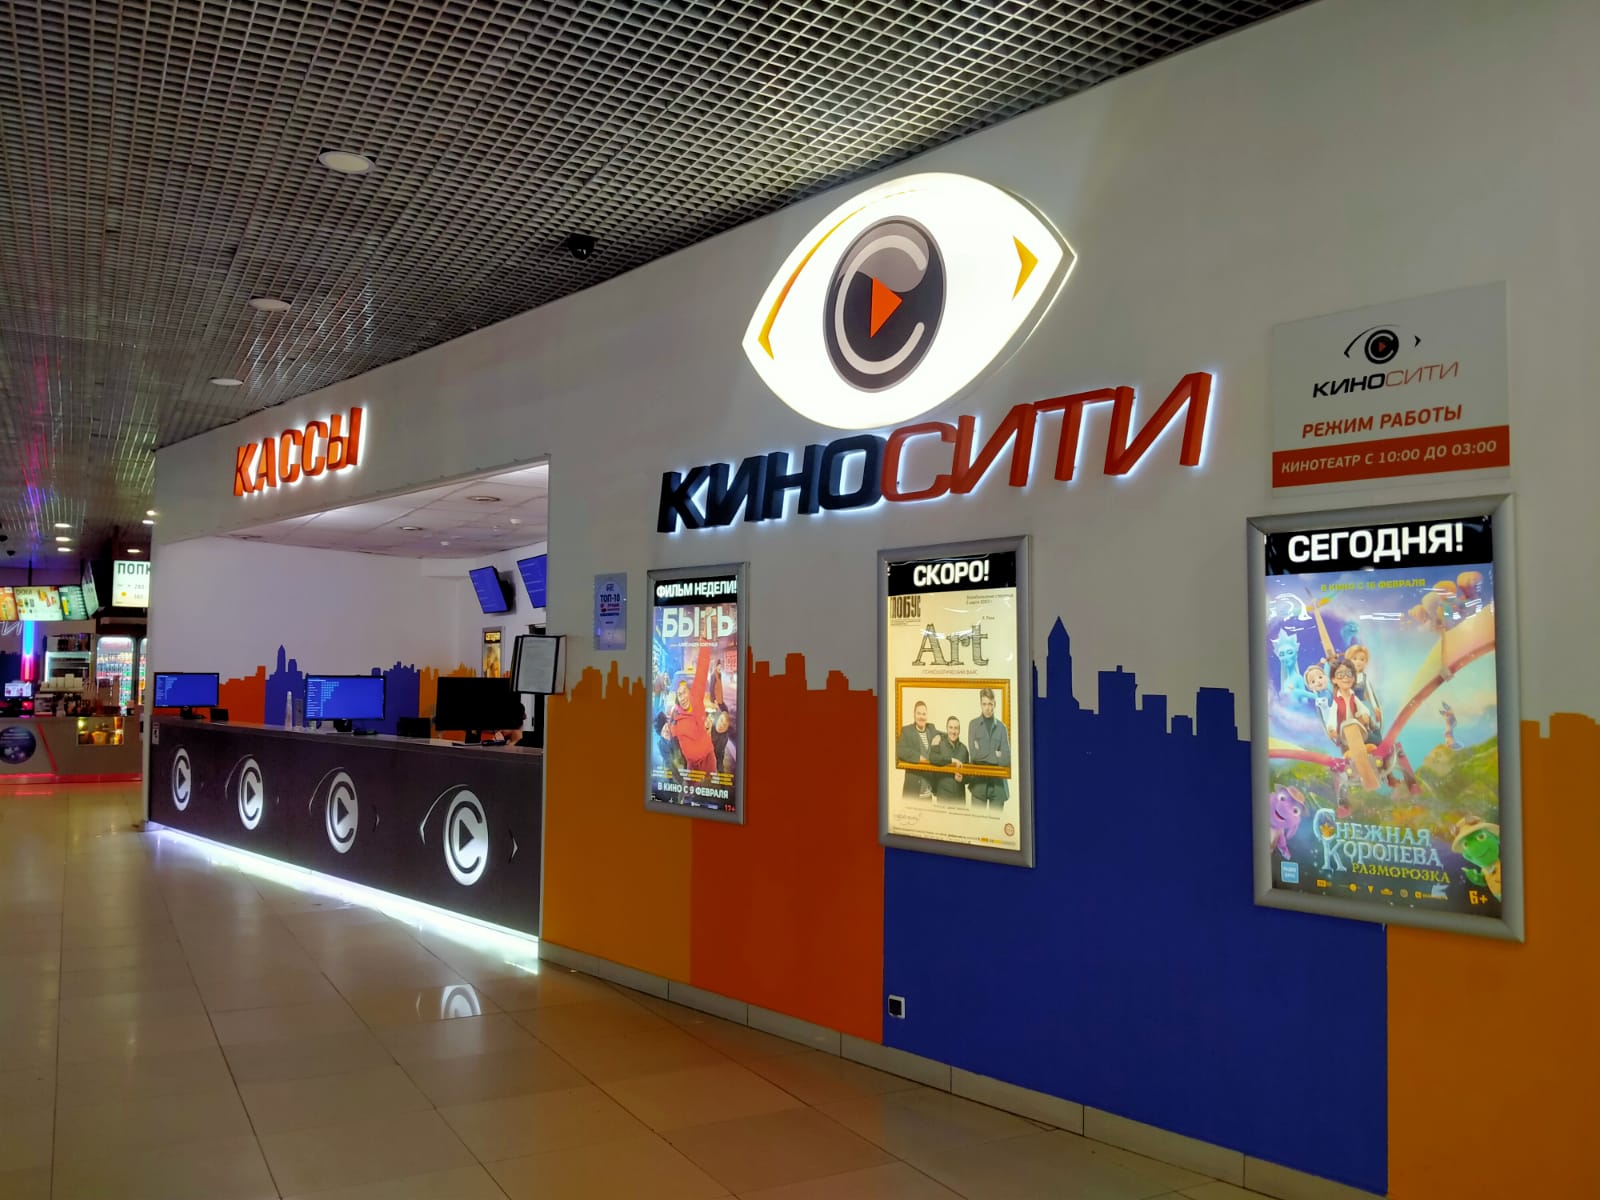 Сибирский молл кинотеатр расписание афиша сегодня